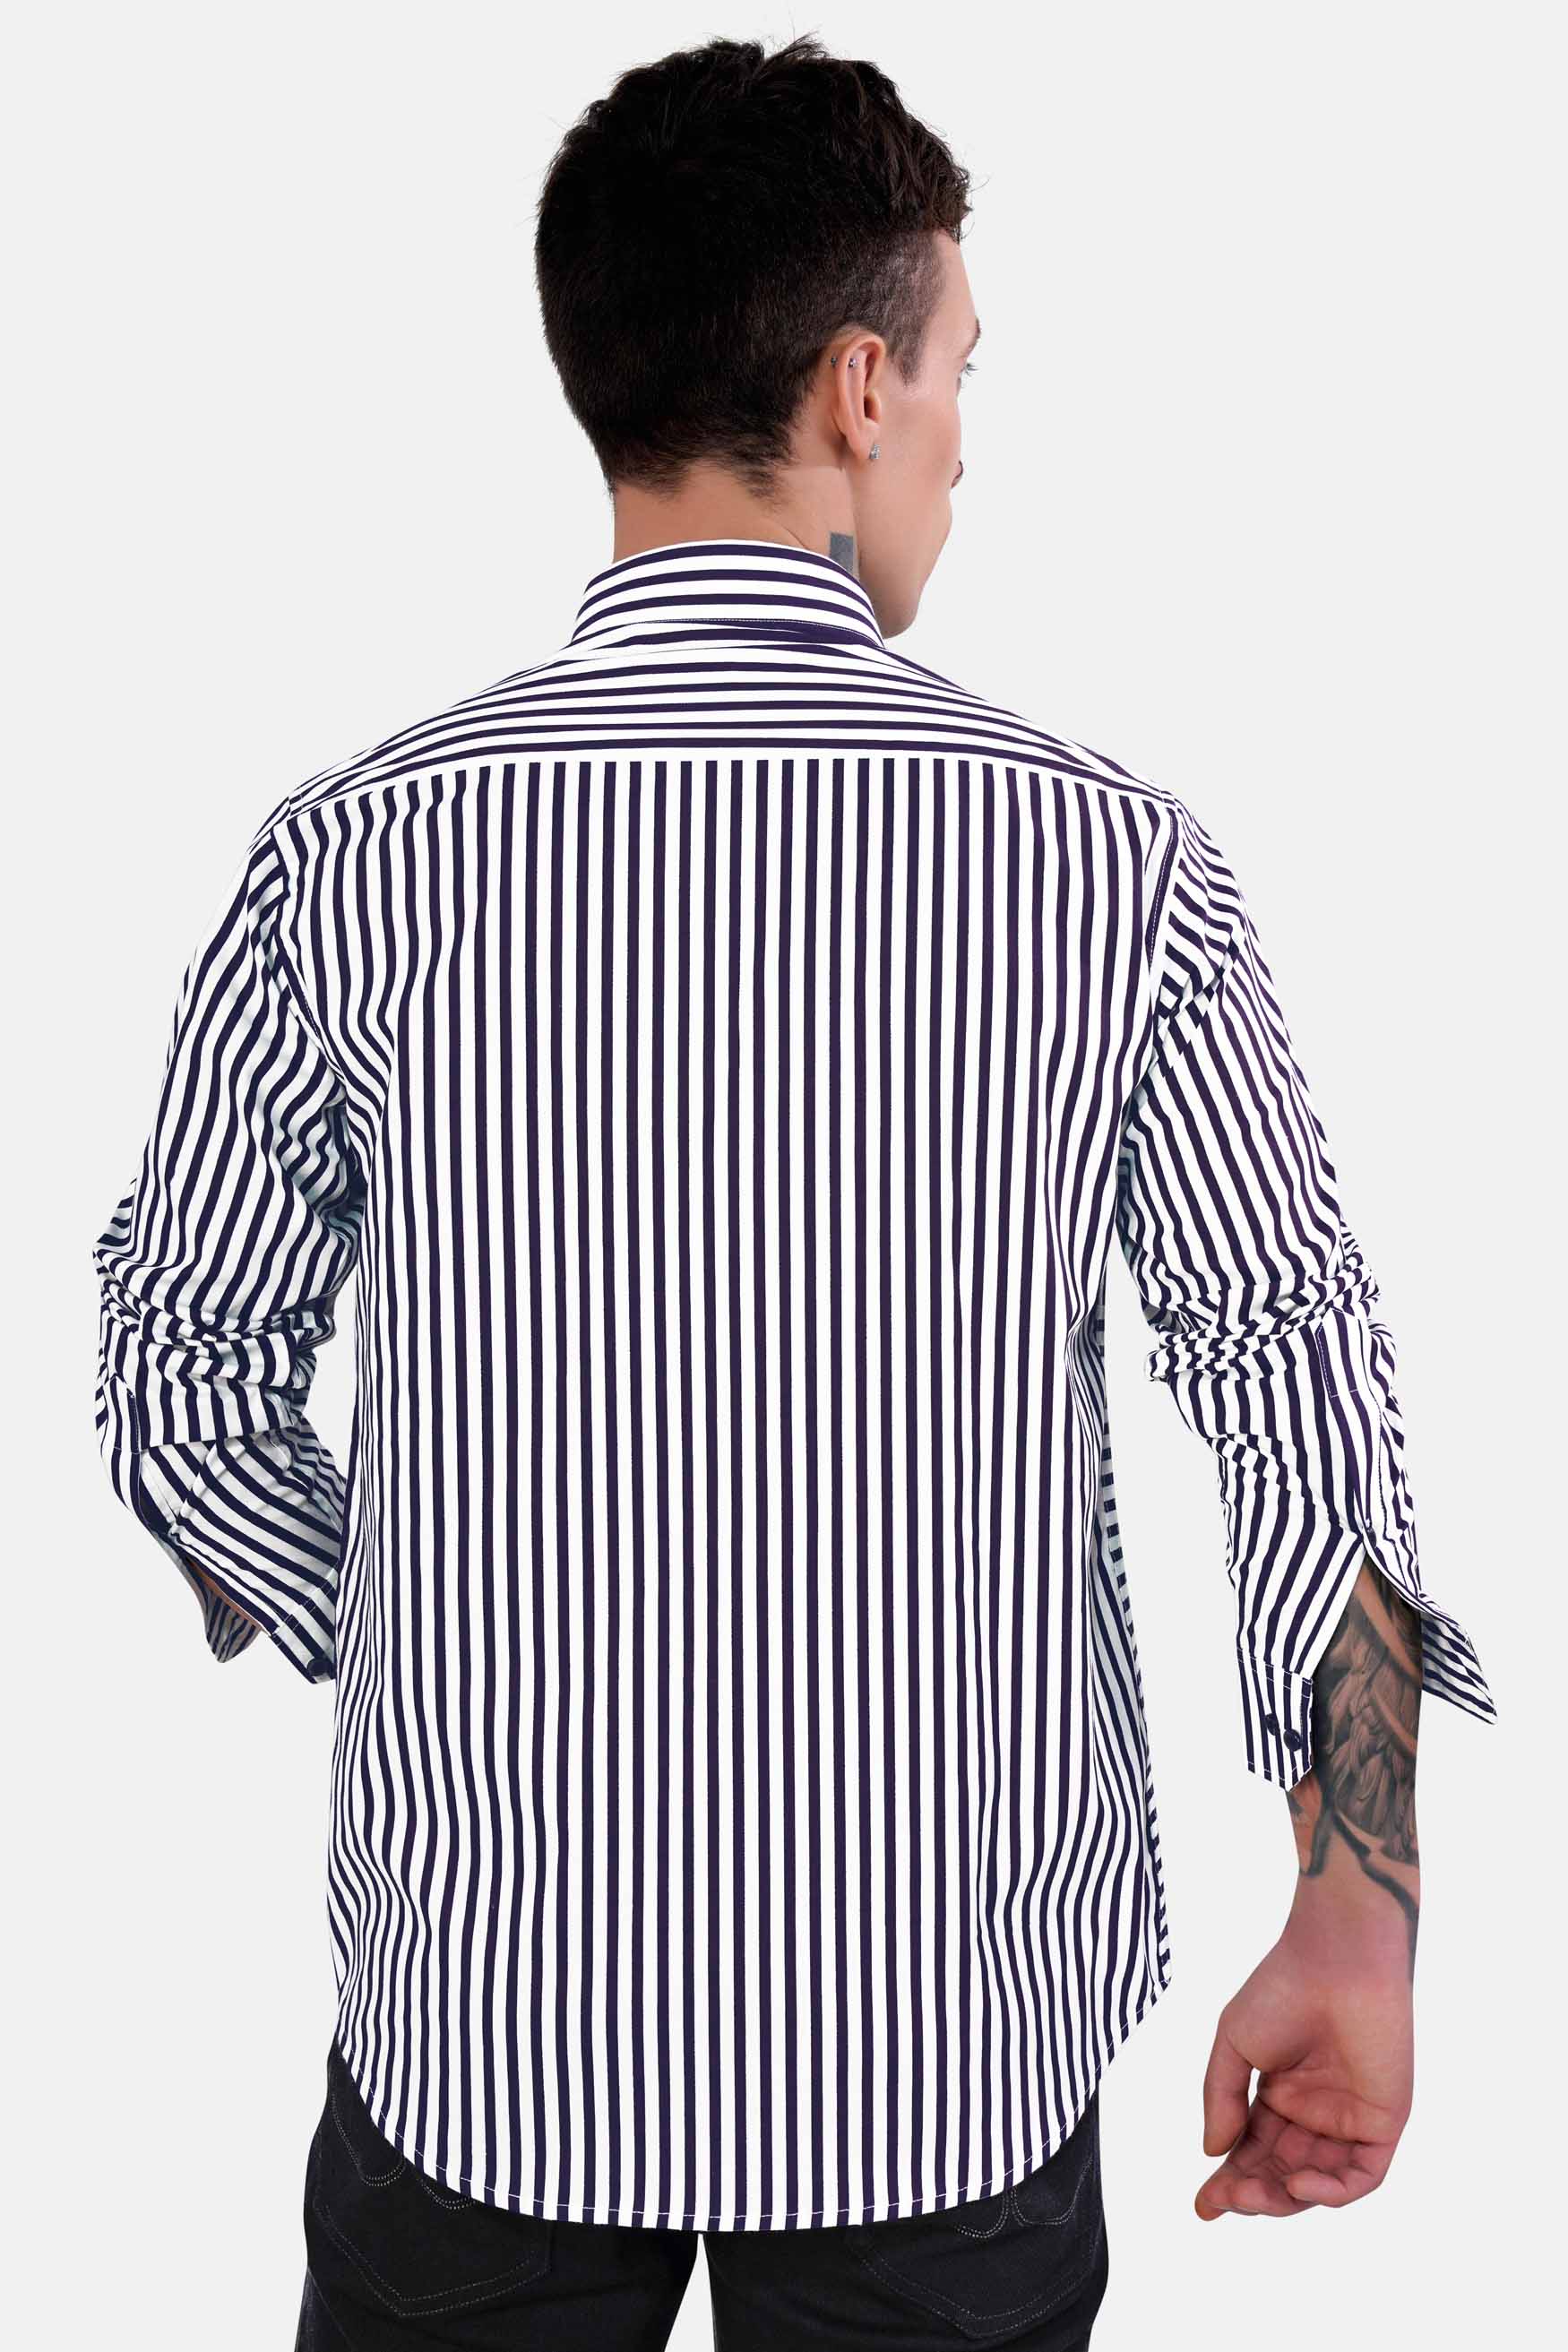 Bright White and Haiti Blue Striped Premium Cotton Designer Shirt